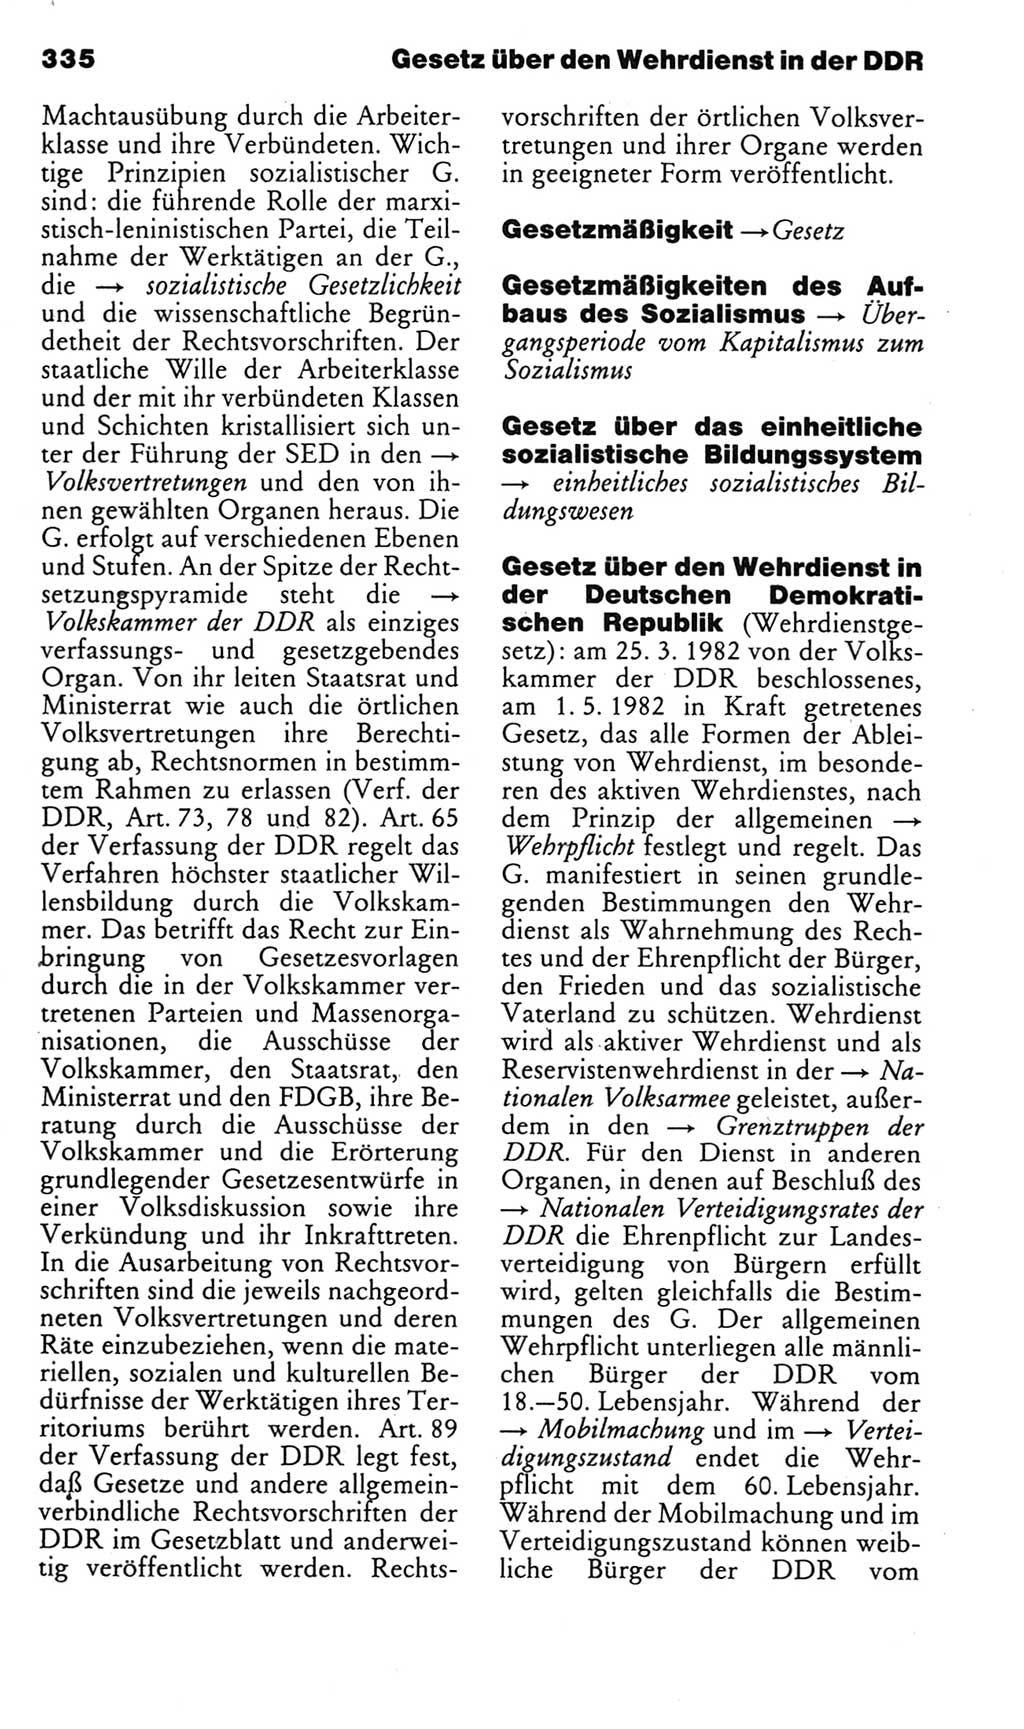 Kleines politisches Wörterbuch [Deutsche Demokratische Republik (DDR)] 1985, Seite 335 (Kl. pol. Wb. DDR 1985, S. 335)